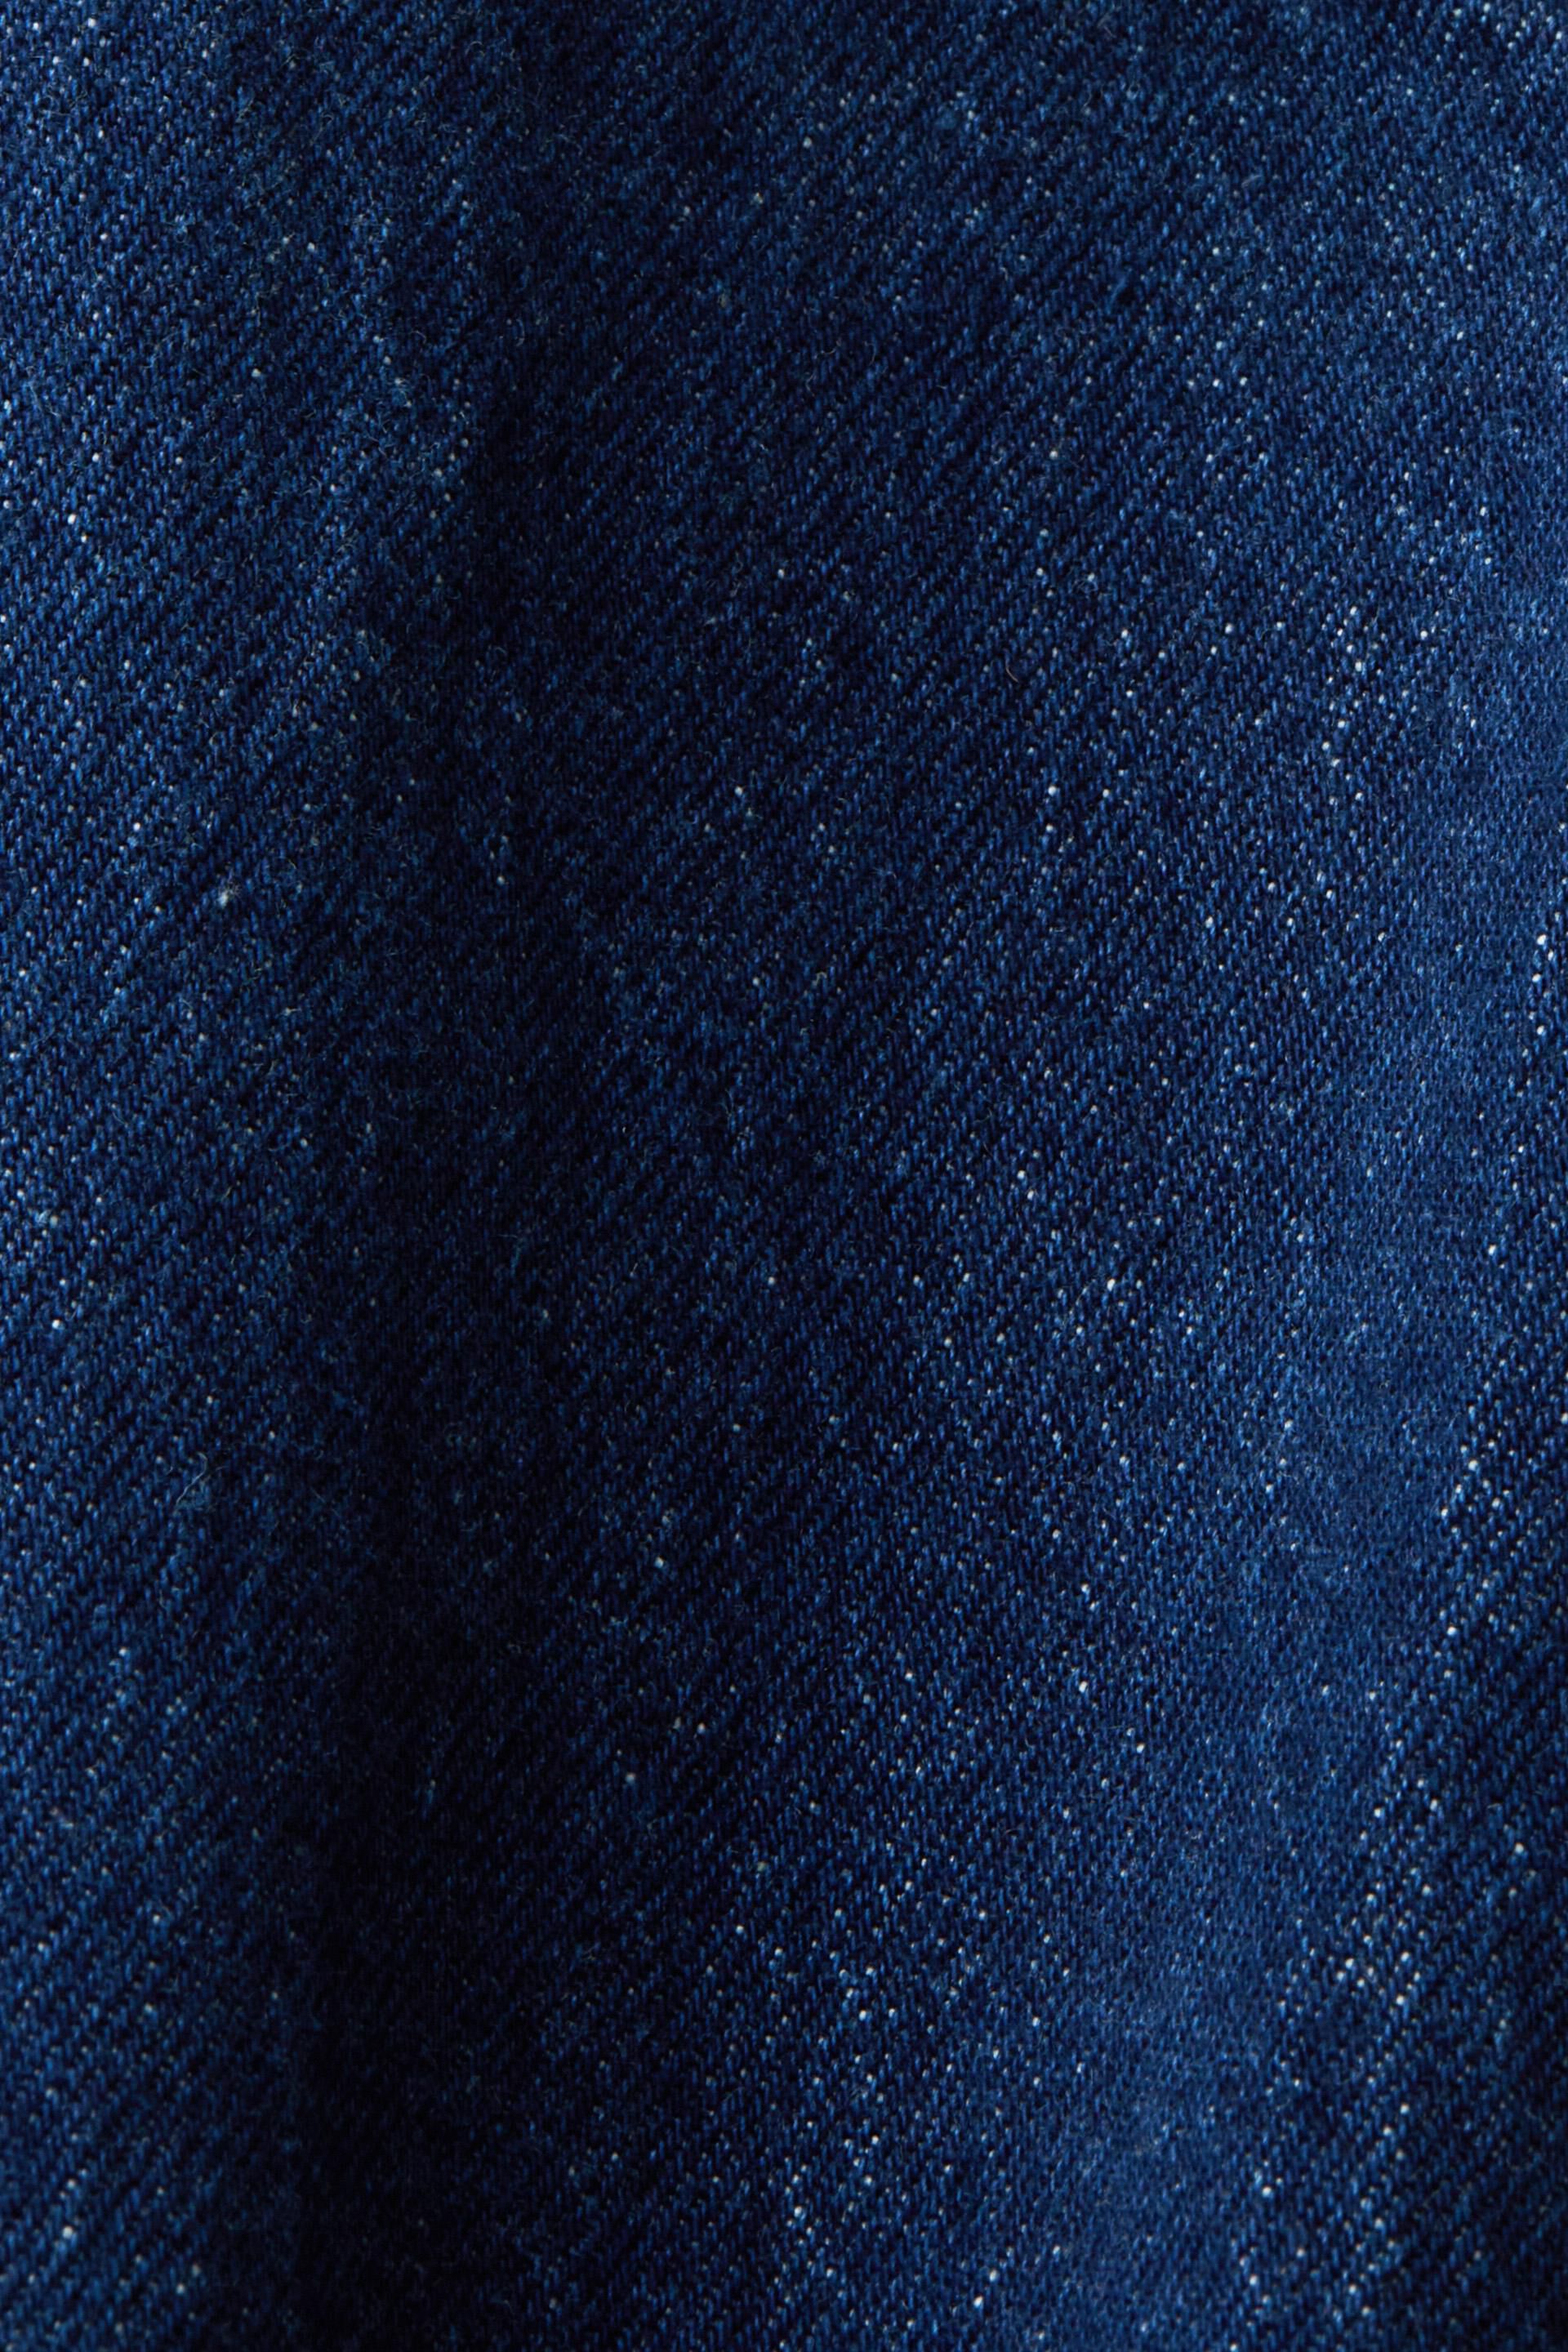 Esprit Stretch-Baumwolle aus Jeans-Truckerjacke